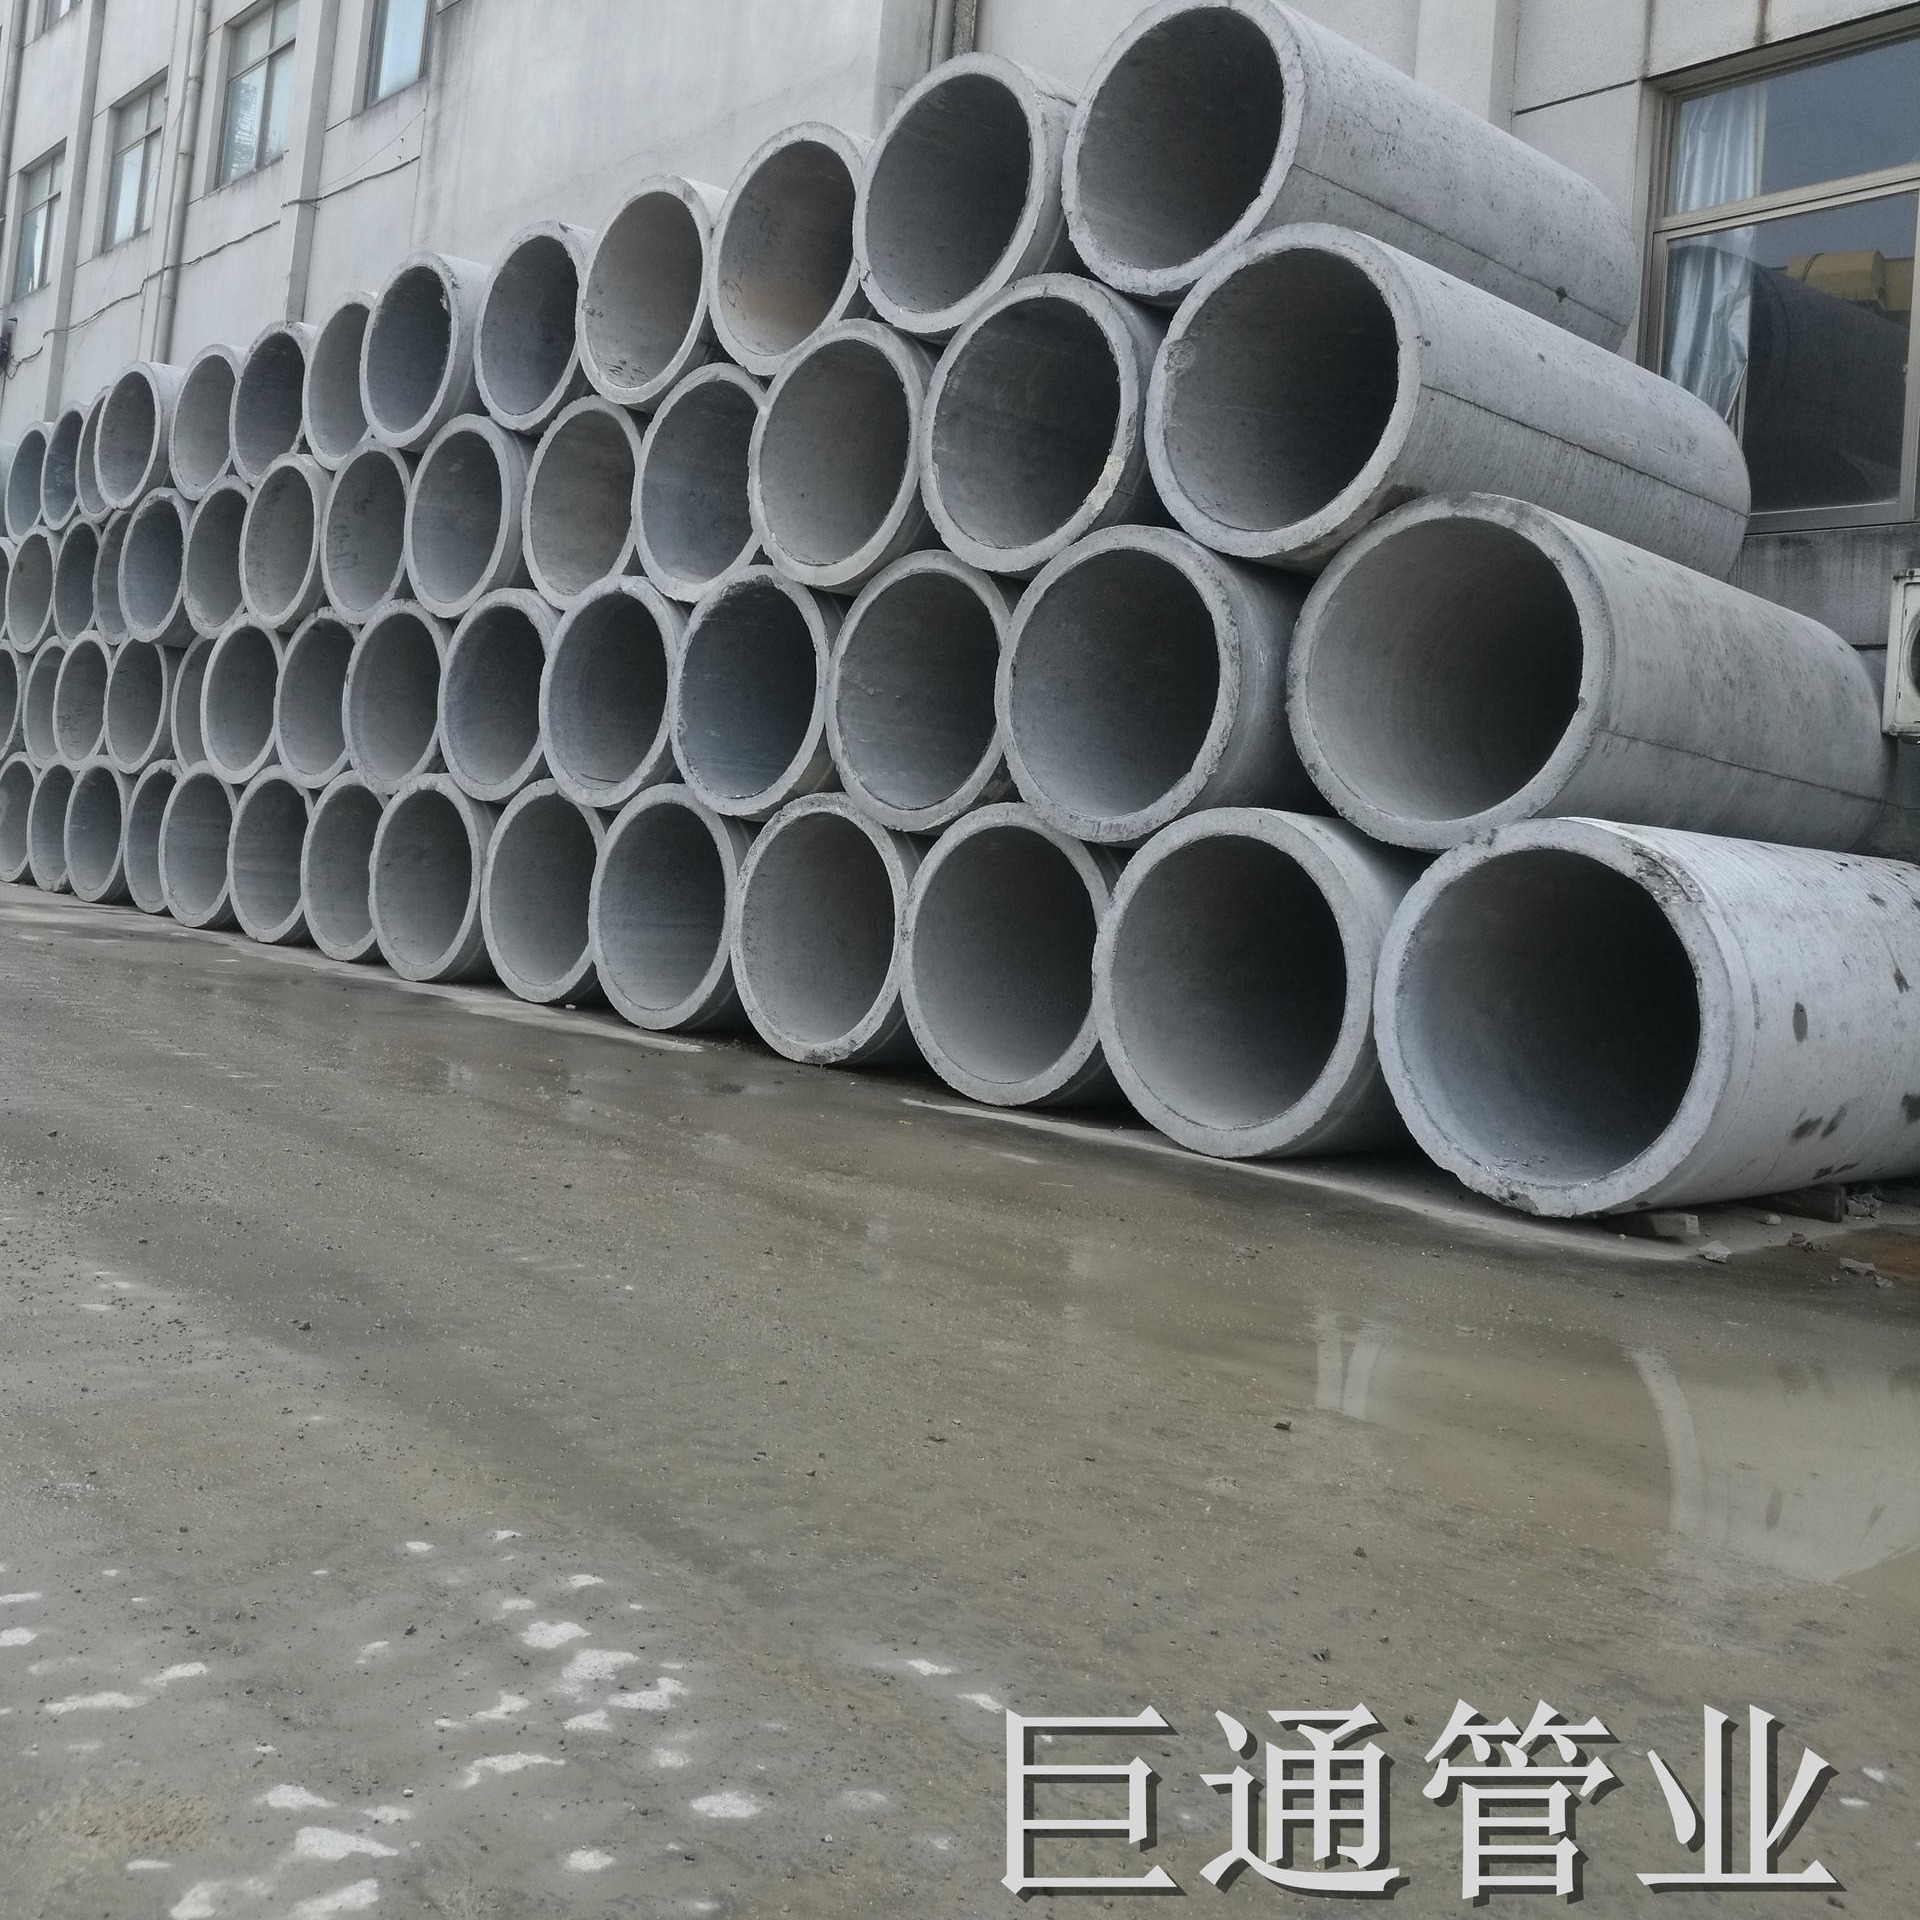 DN8002000 III级钢筋混凝土排水管 平口管 水泥管 压力管 涵管